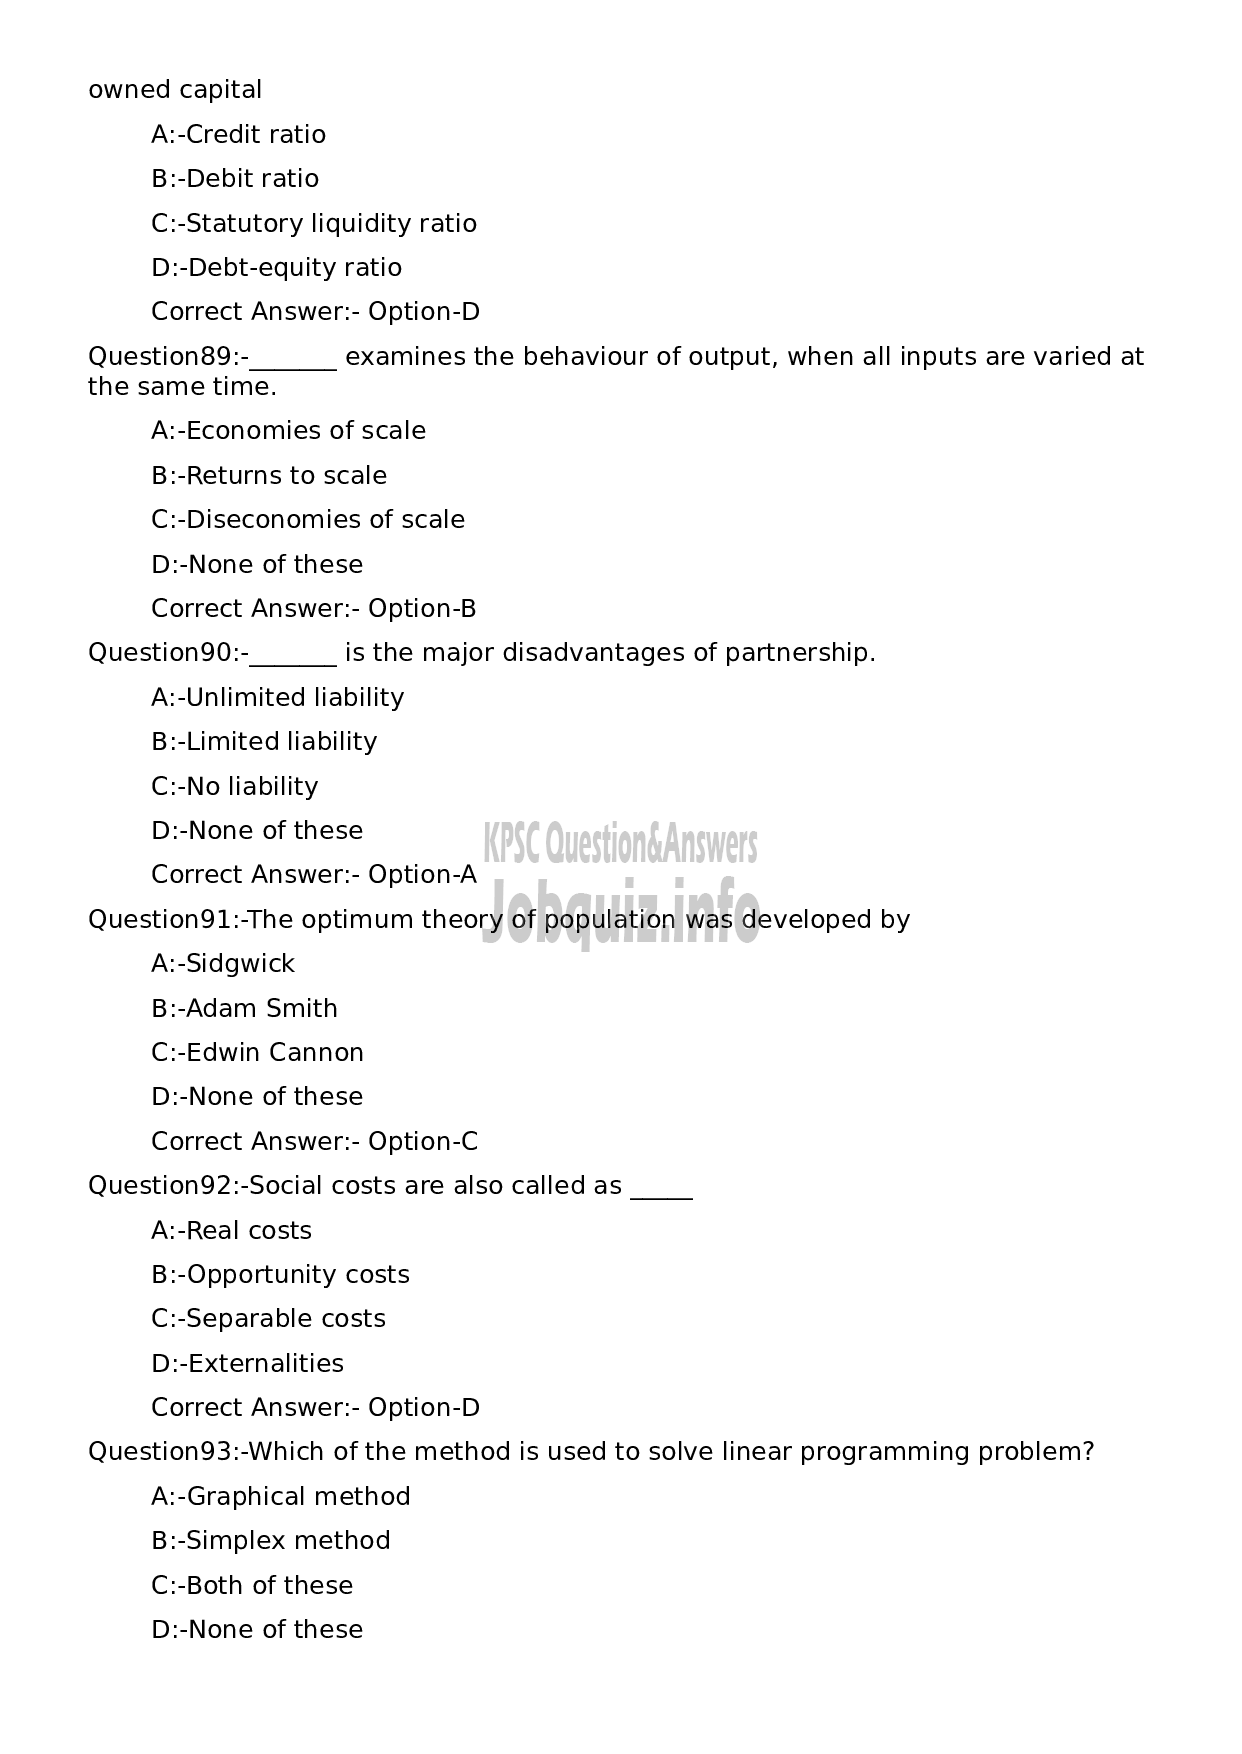 Kerala PSC Question Paper - Soil Survey Officer/ Research Assistant/ Cartographer/ Technical Assistant (NCA- SC)-17